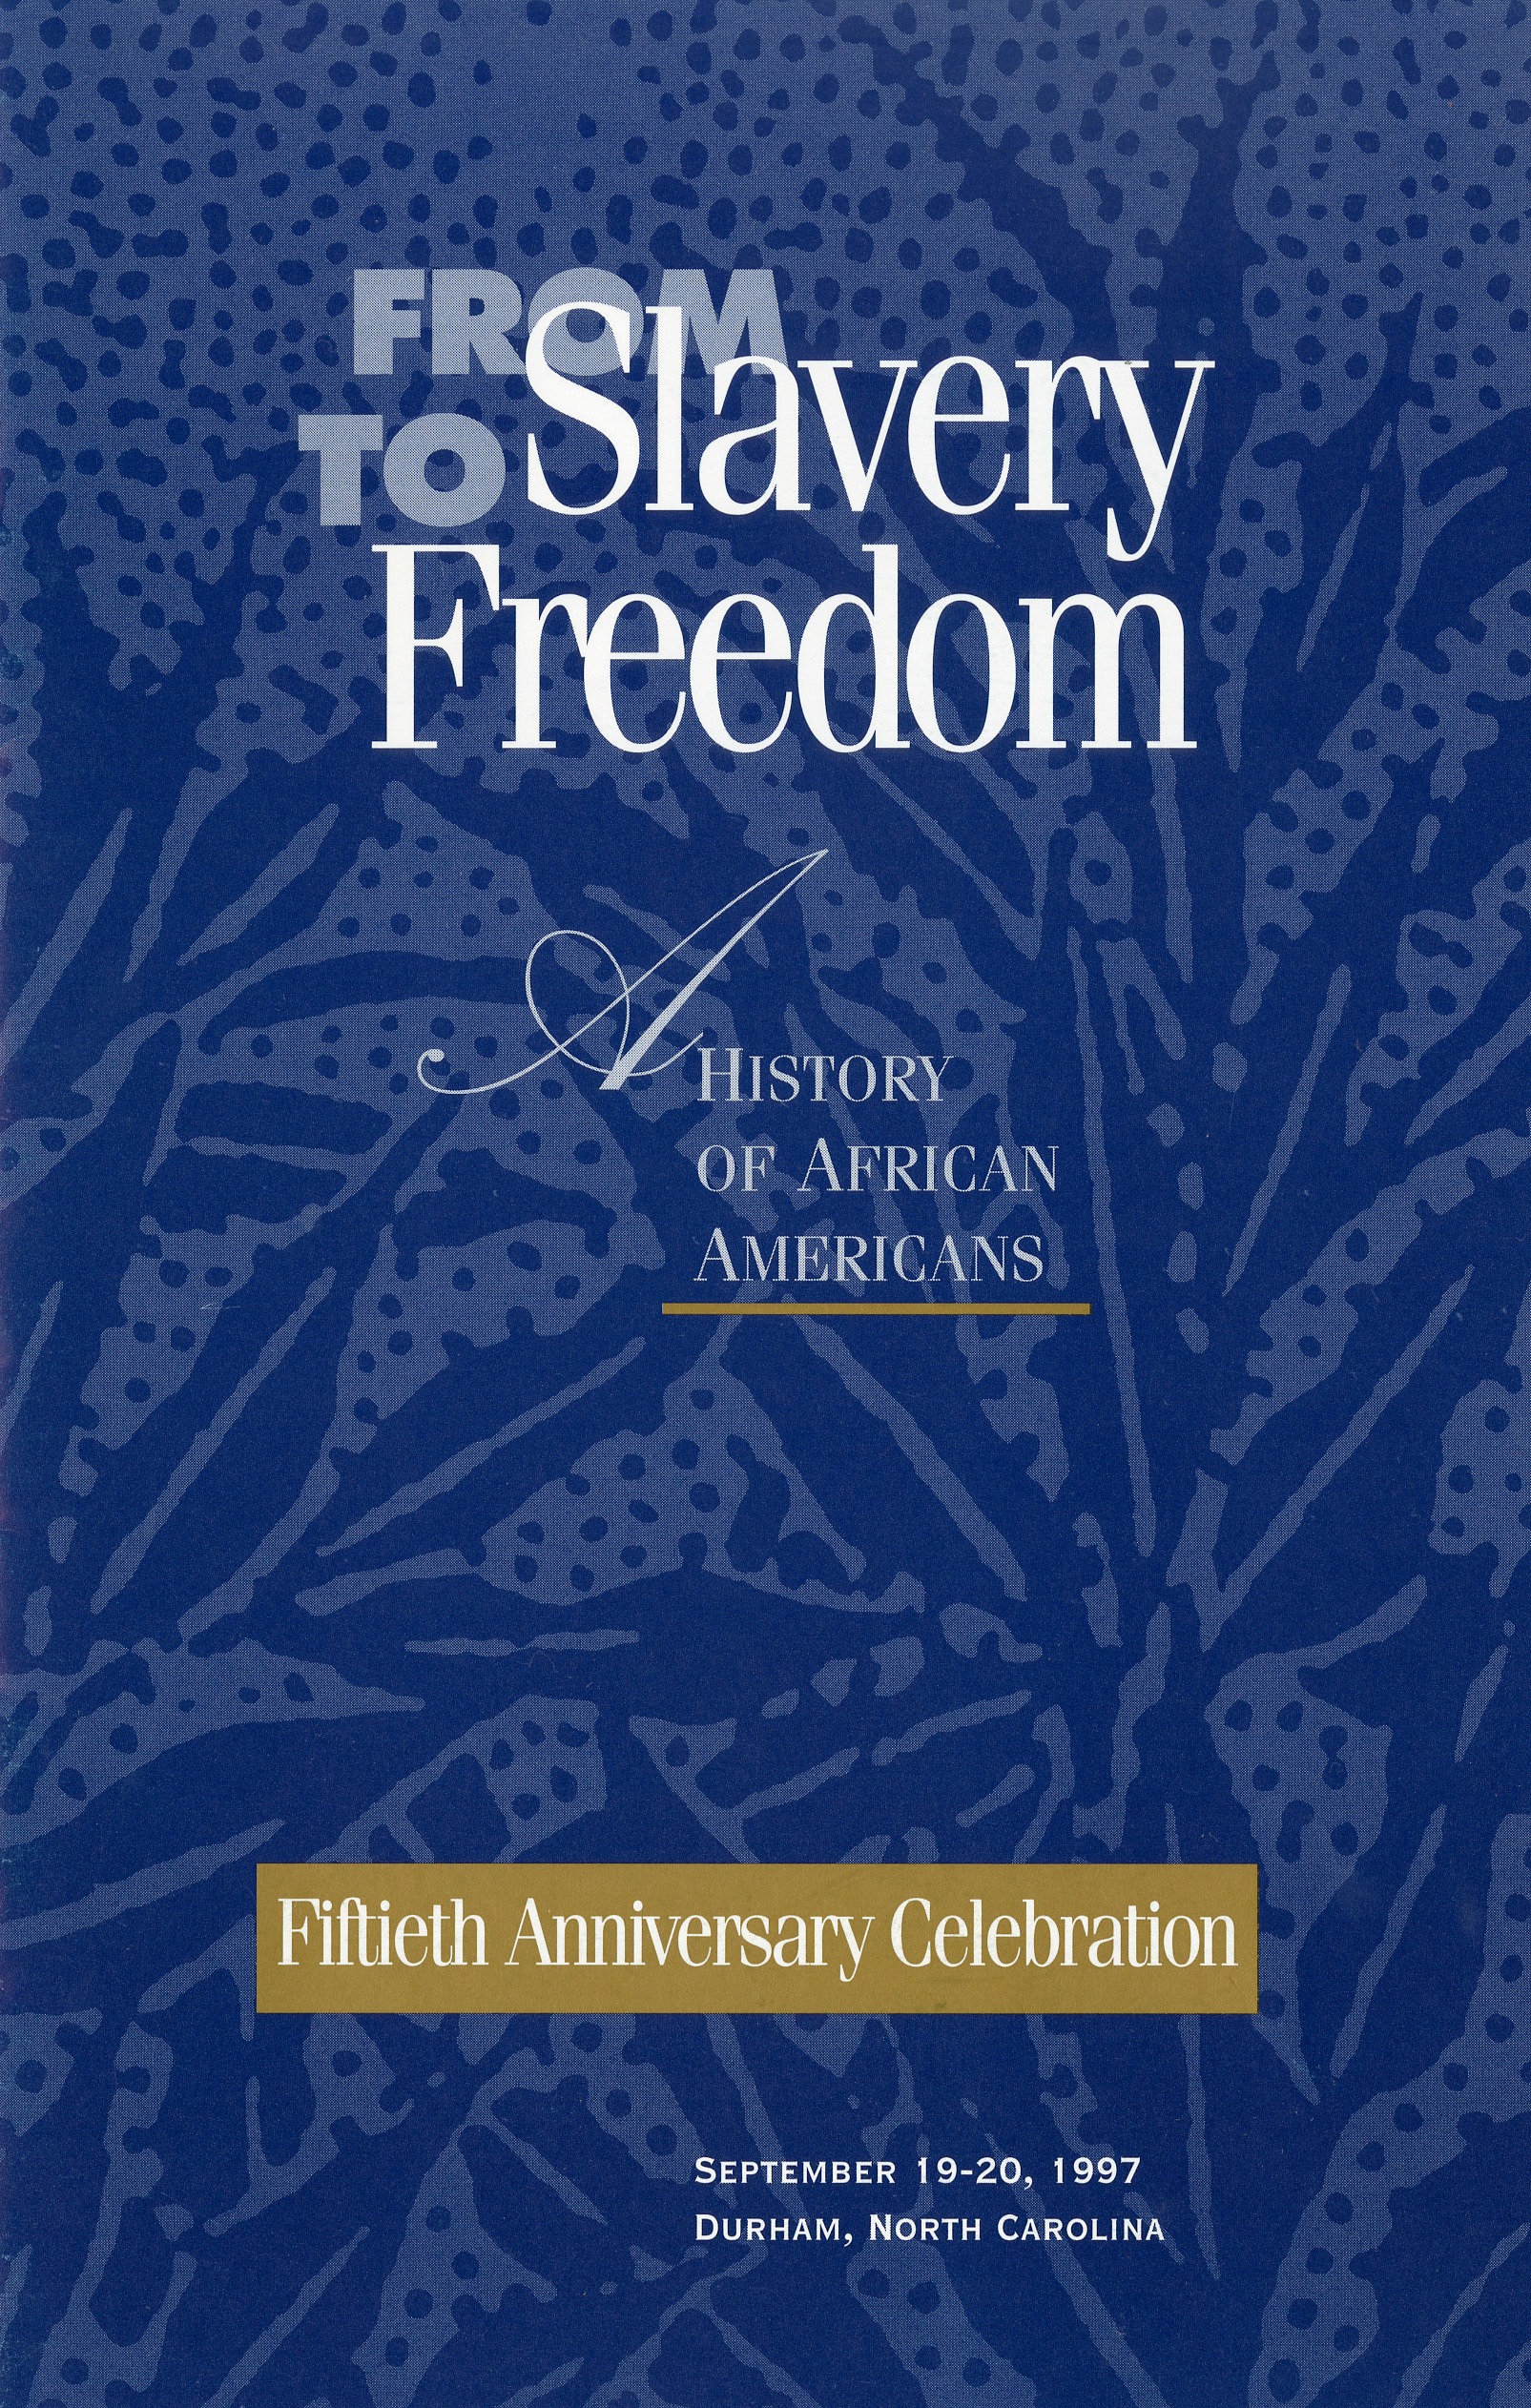 From Slavery to Freedom, fiftieth anniversary program at Duke University, 1997